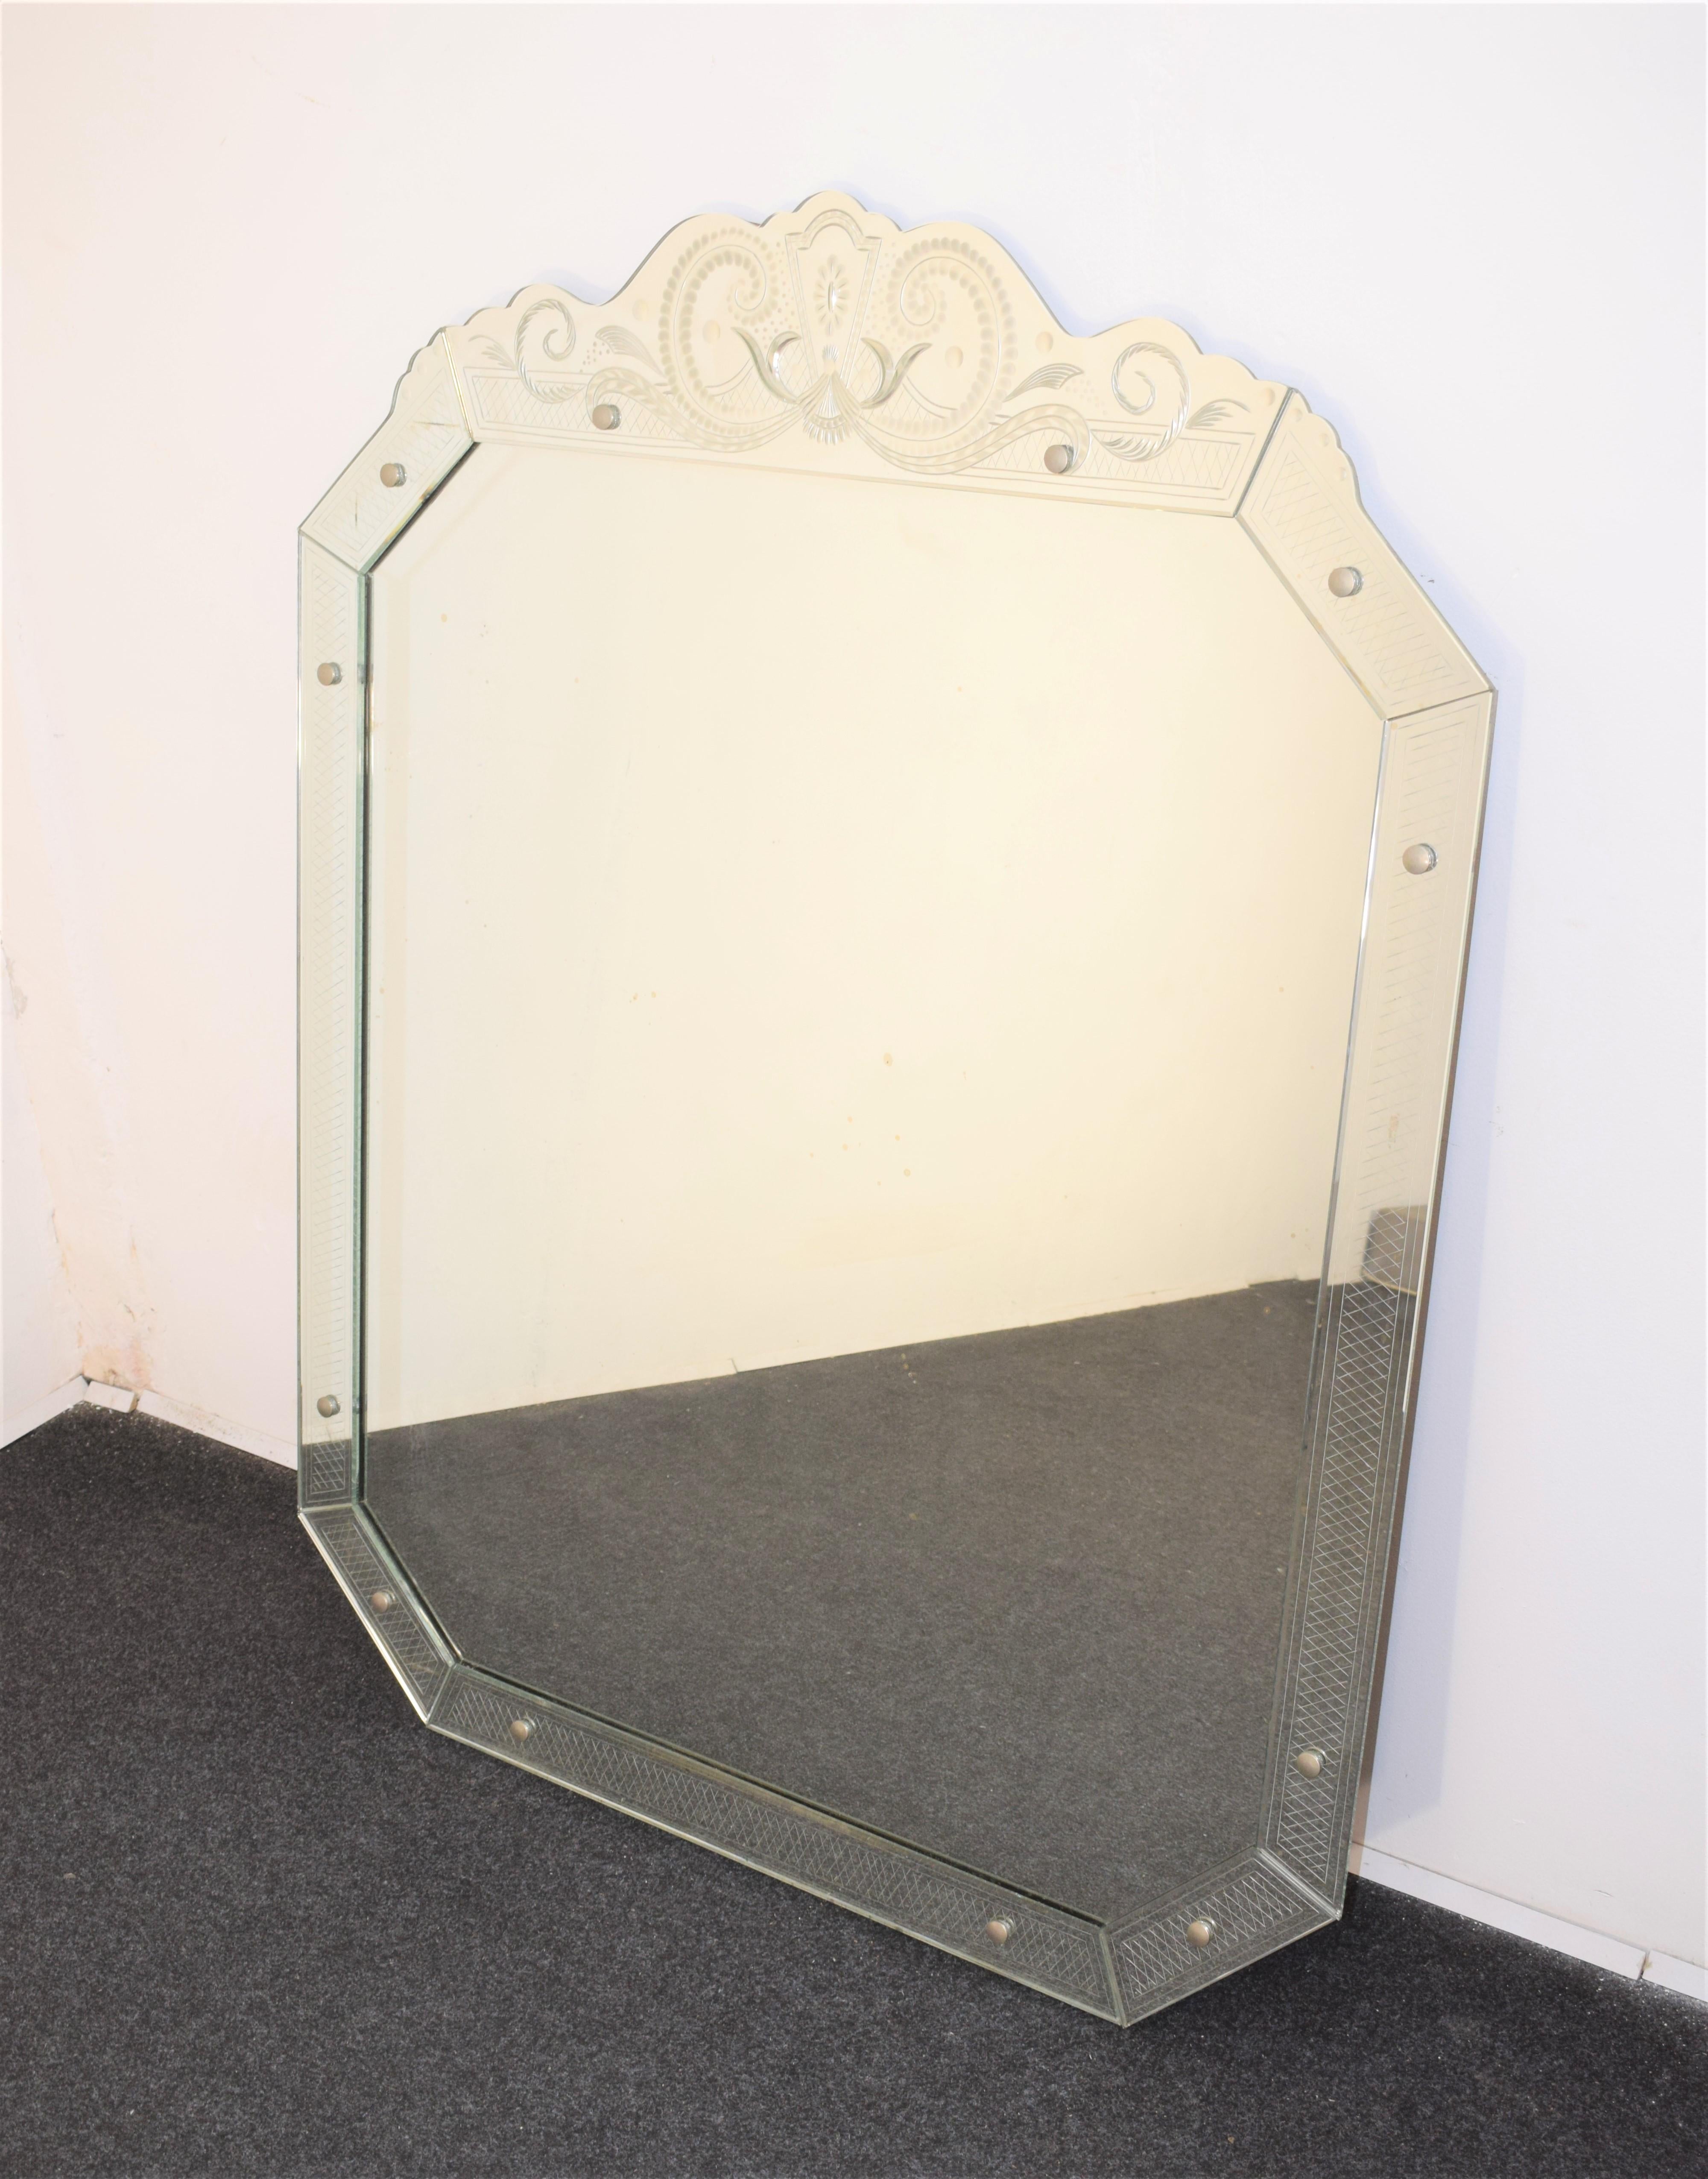 Italienischer Spiegel von Pietro Chiesa, 1950er Jahre.

Abmessungen: H= 126 cm; B= 99 cm; D=4 cm.